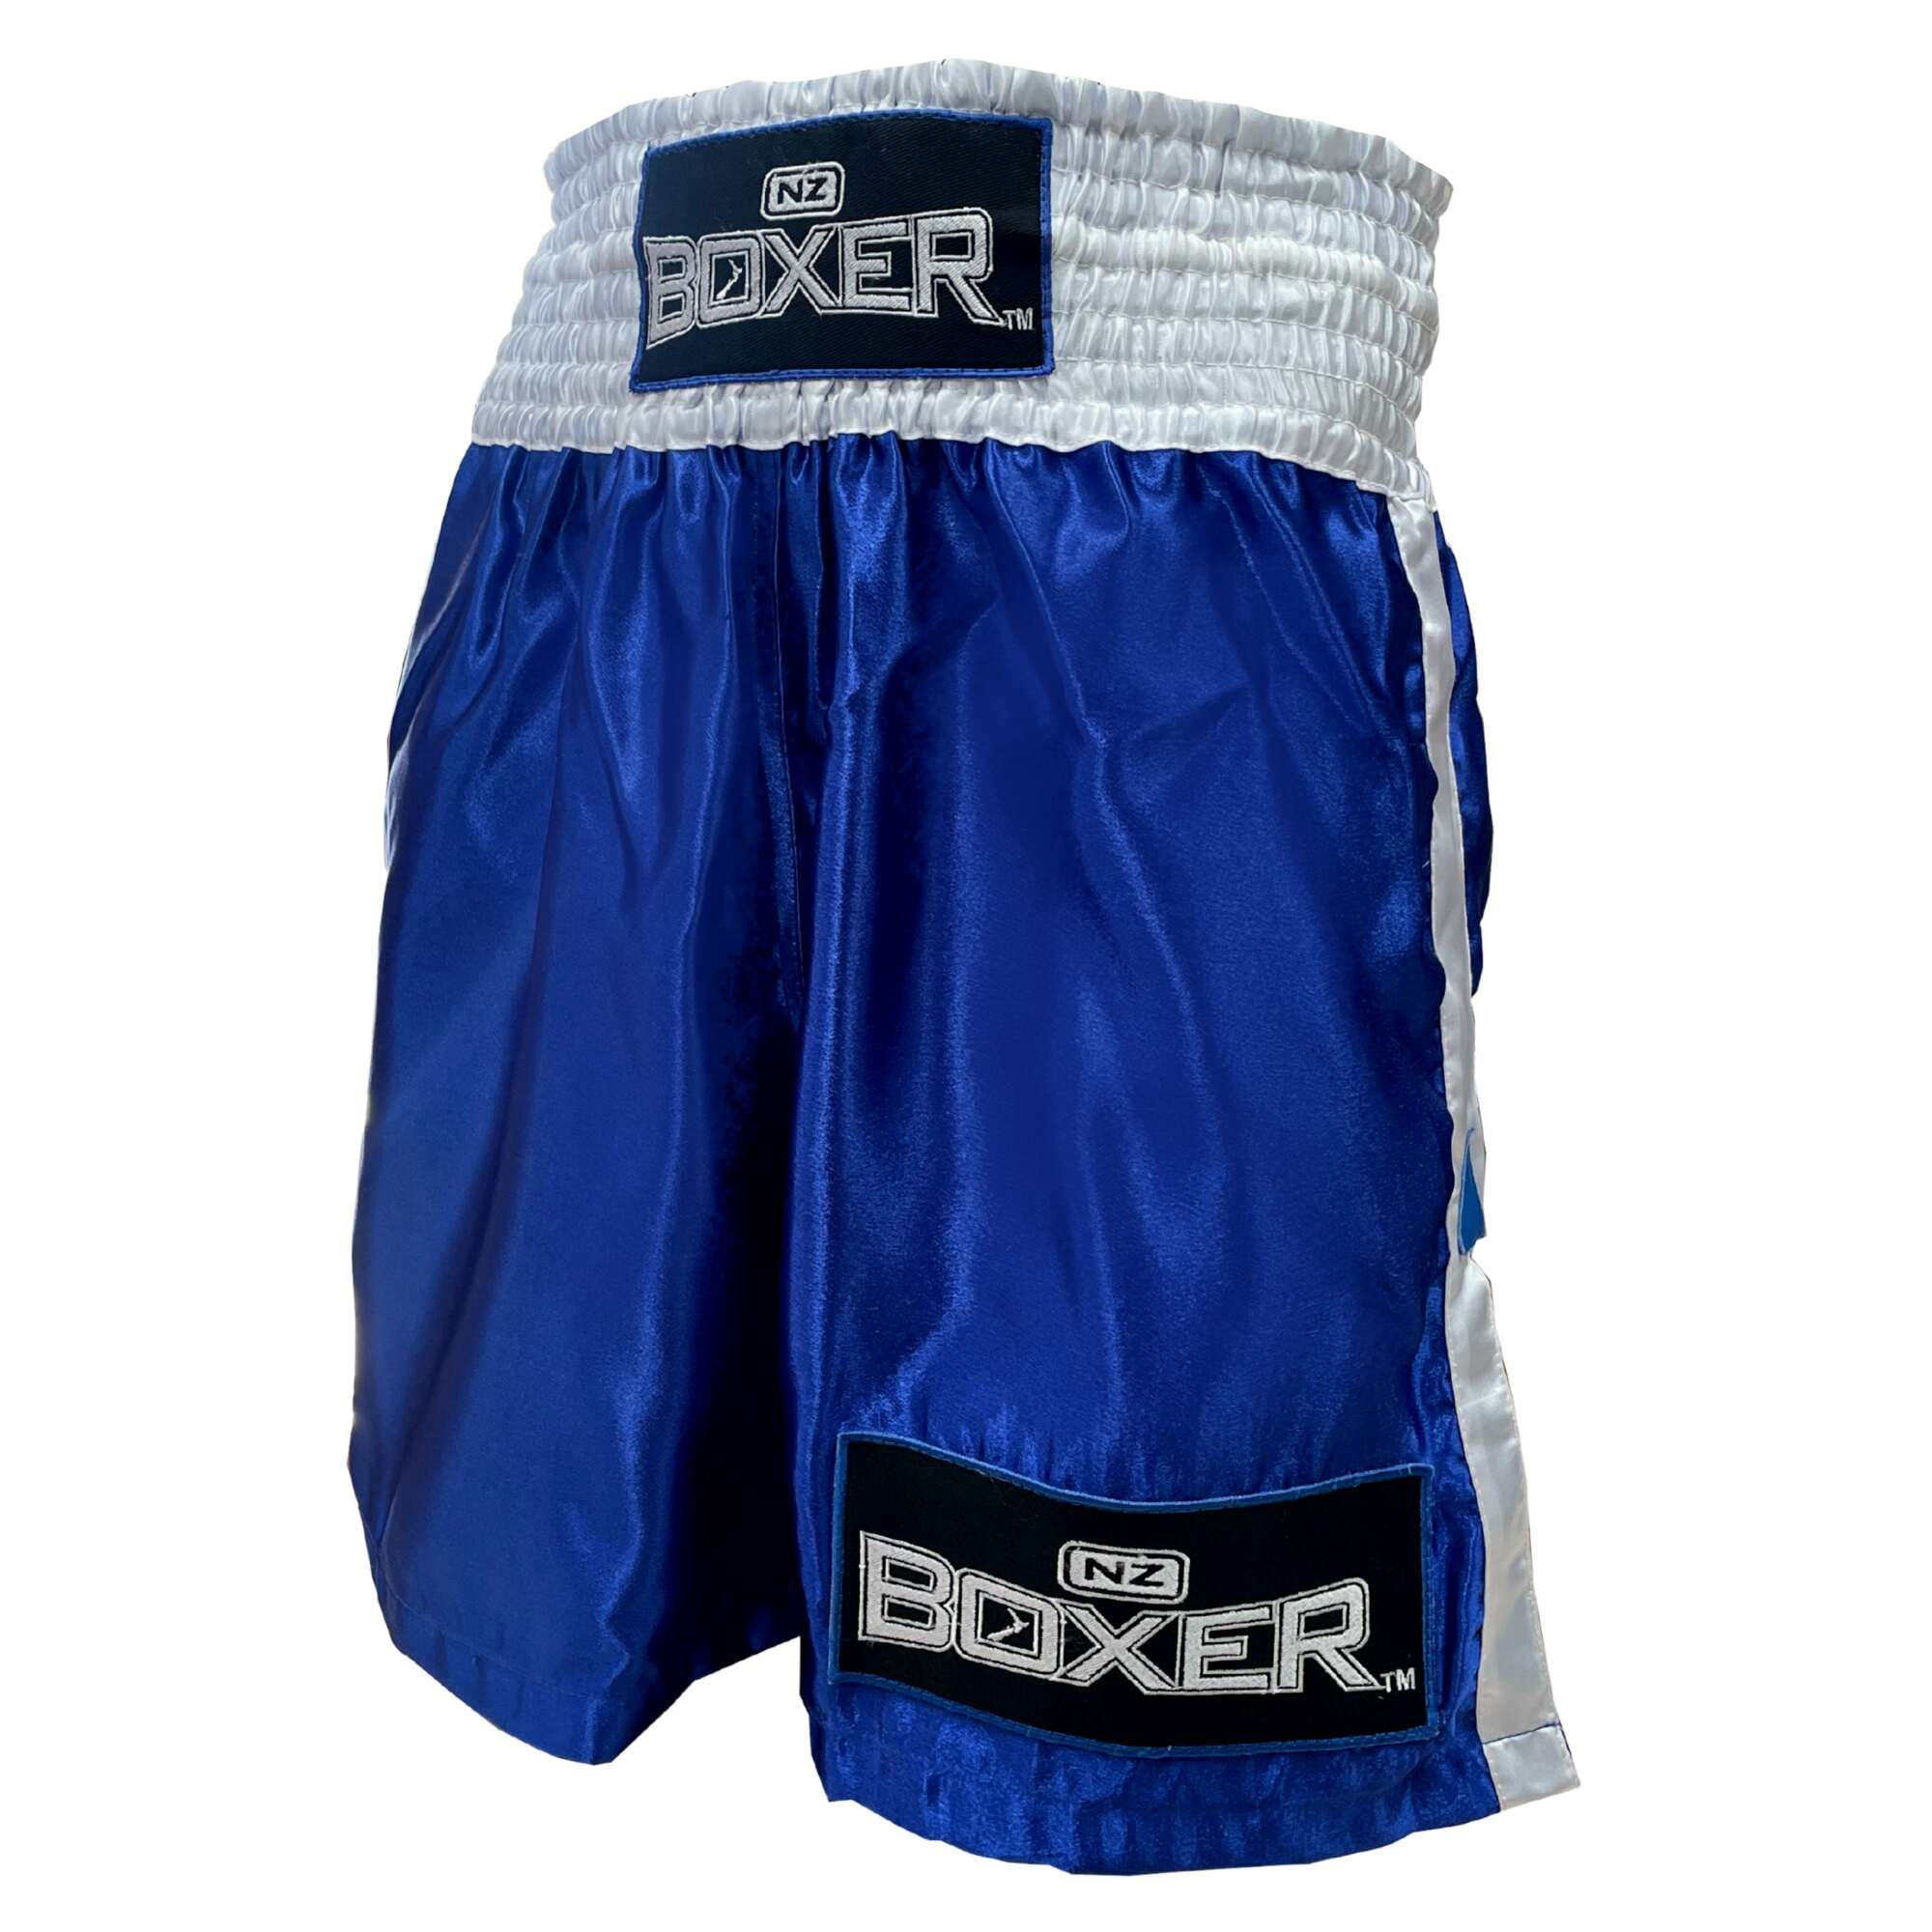 NZ Boxer Unisex White Band Boxing Short